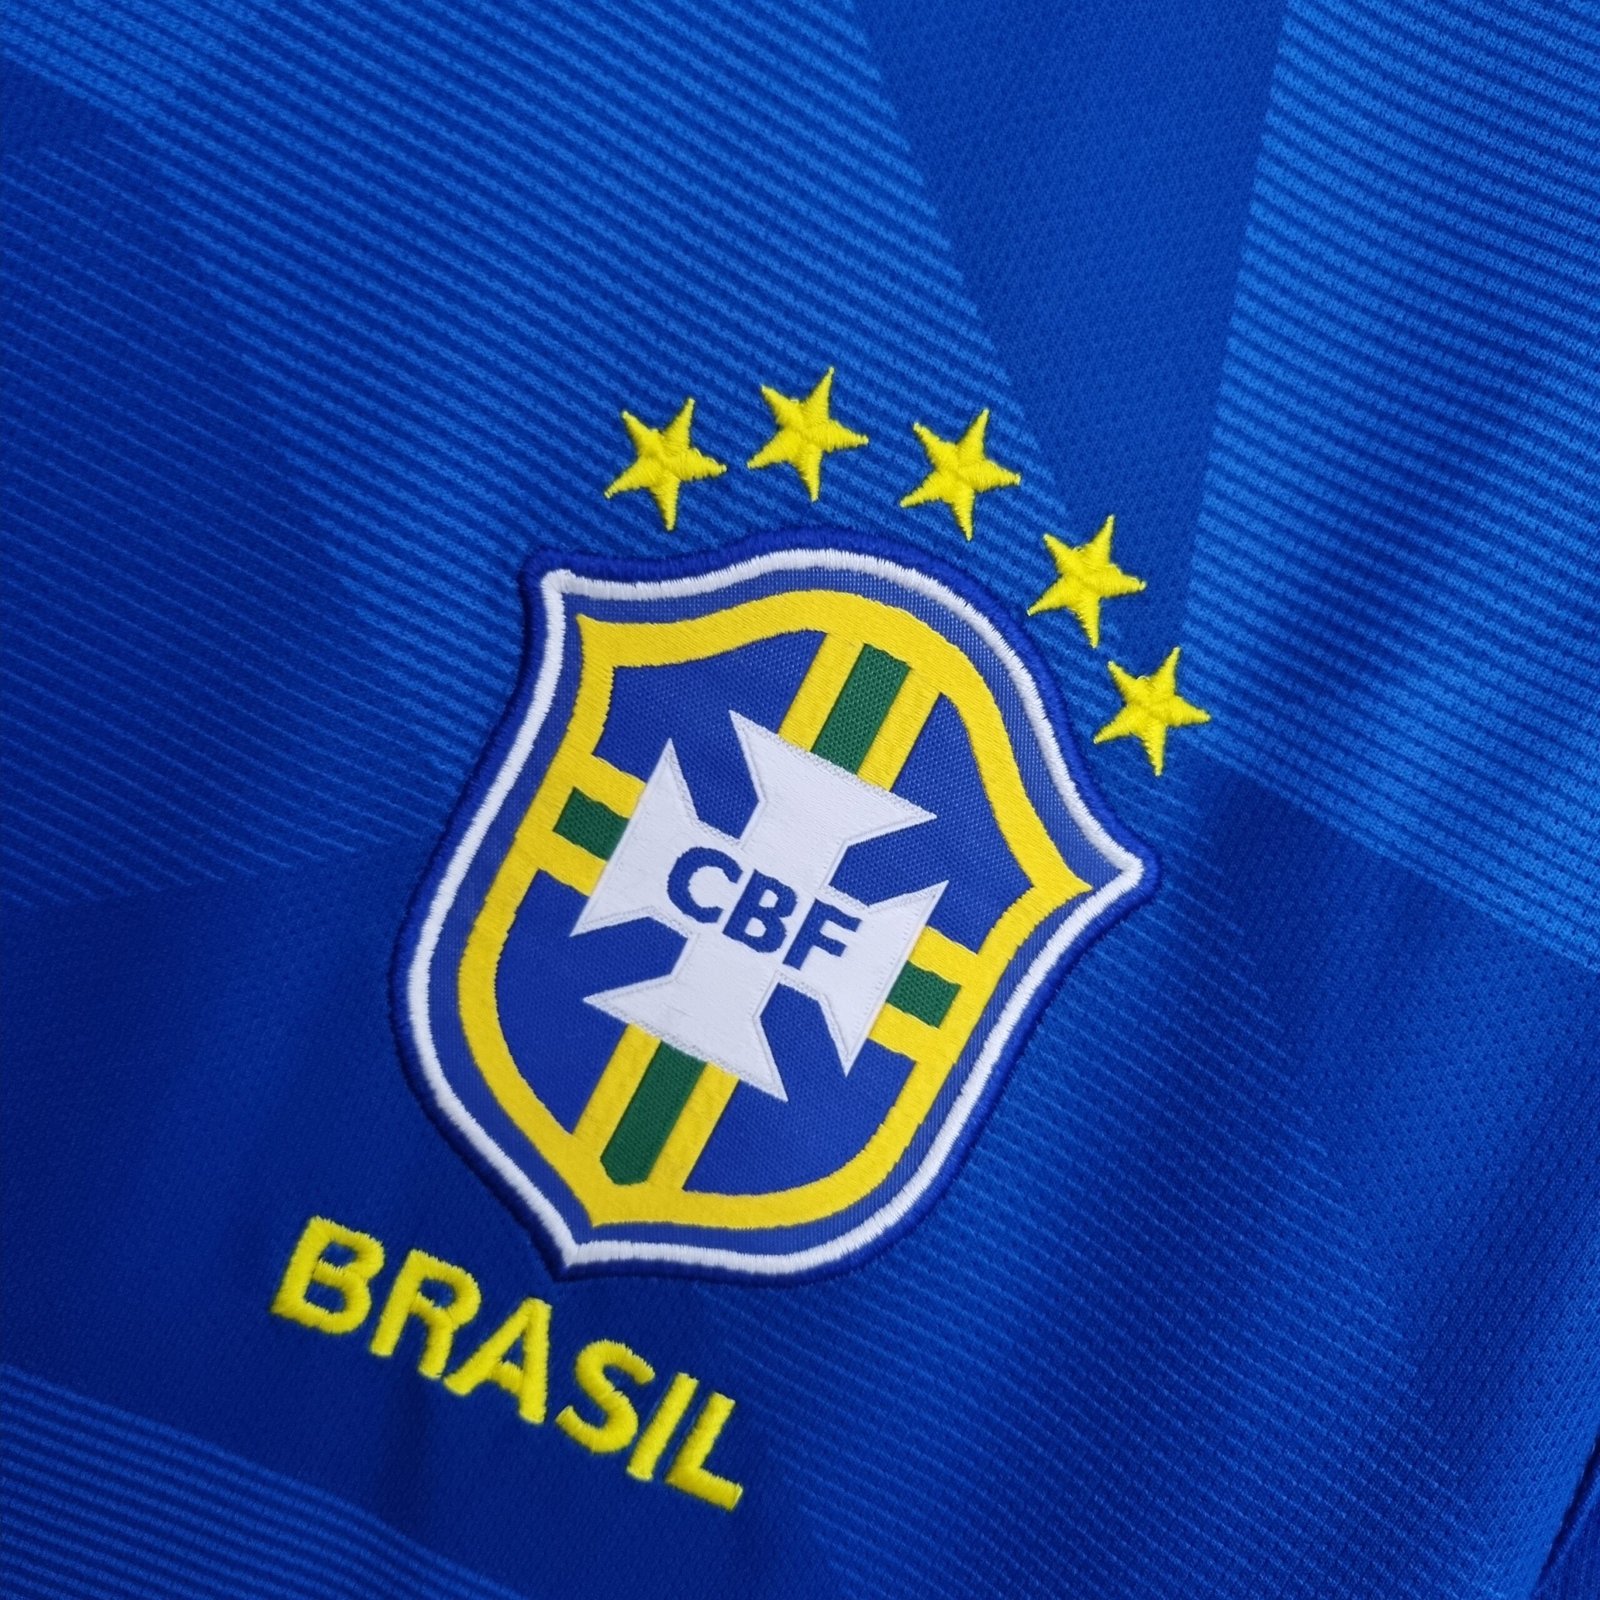 Camisa Seleção Brasileira Azul Away 2018 – Versão Torcedor – KS